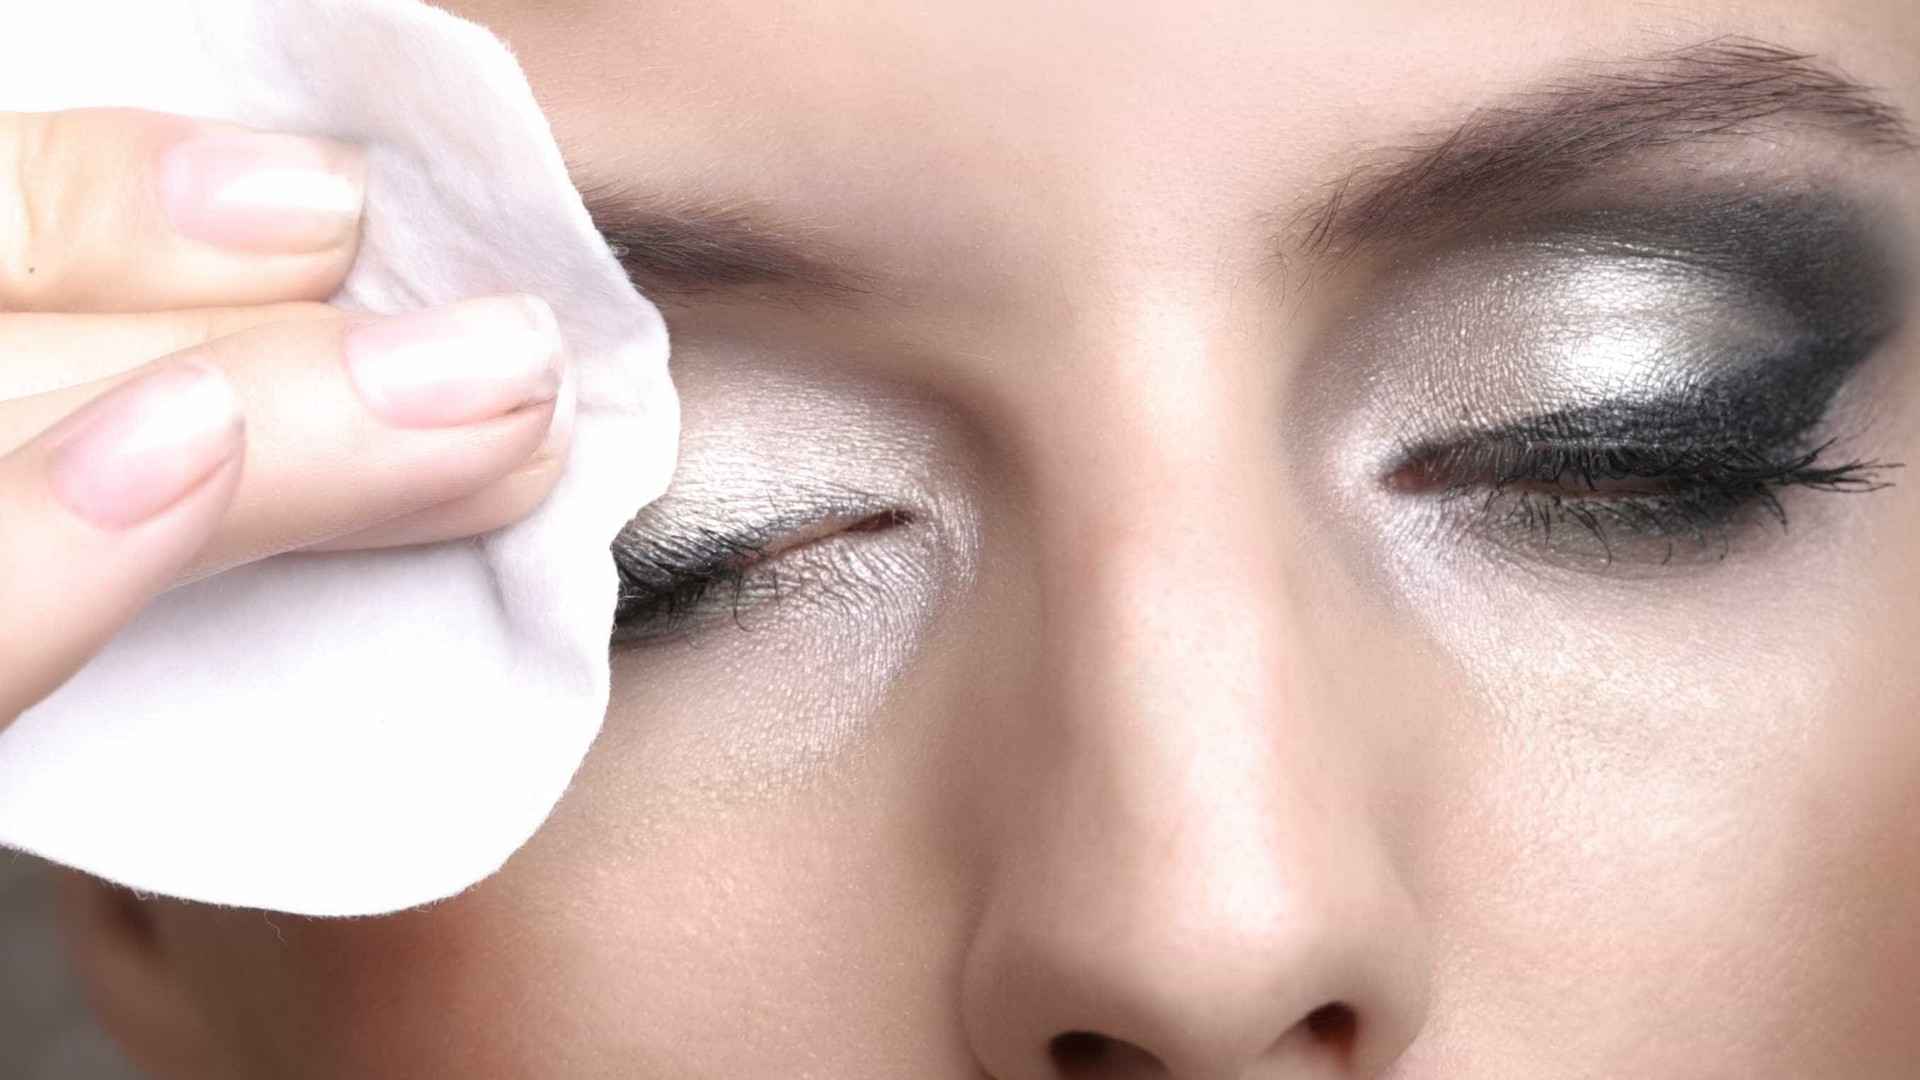 Aprenda a retirar a maquiagem 
sem agredir a pele